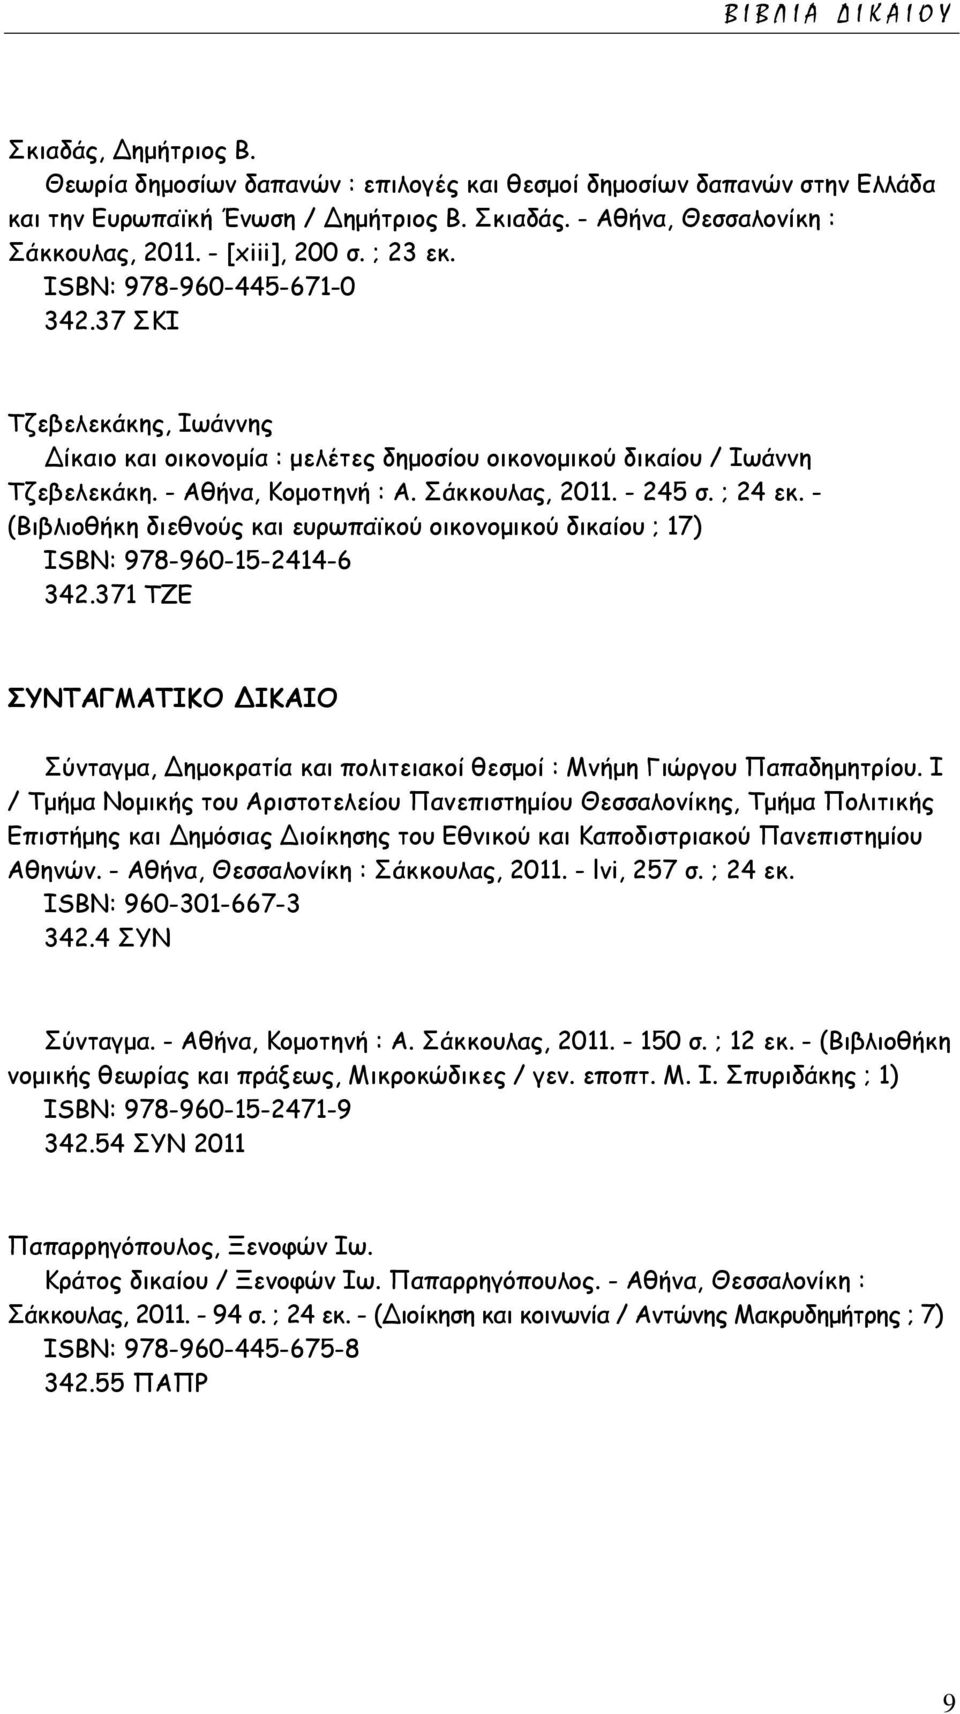 Σάκκουλας, 2011. - 245 σ. ; 24 εκ. - (Βιβλιοθήκη διεθνούς και ευρωπαϊκού οικονομικού δικαίου ; 17) ISΒΝ: 978-960-15-2414-6 342.